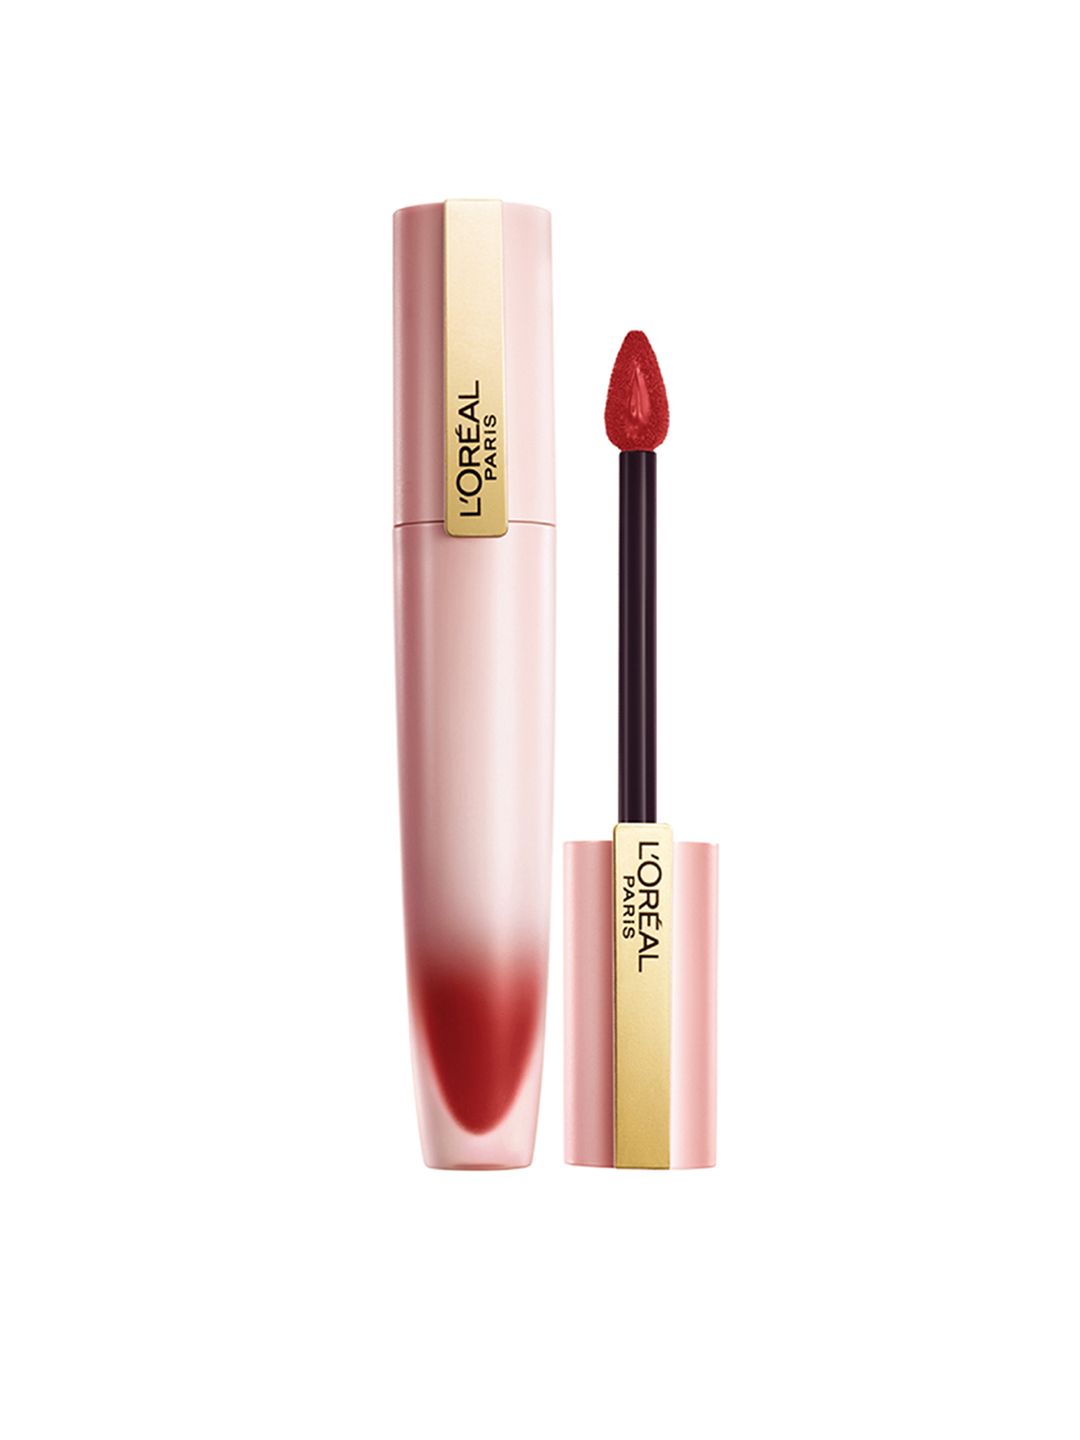 LOreal Paris Chiffon Signature Liquid Lipstick 7ml - Lead 129 Price in India